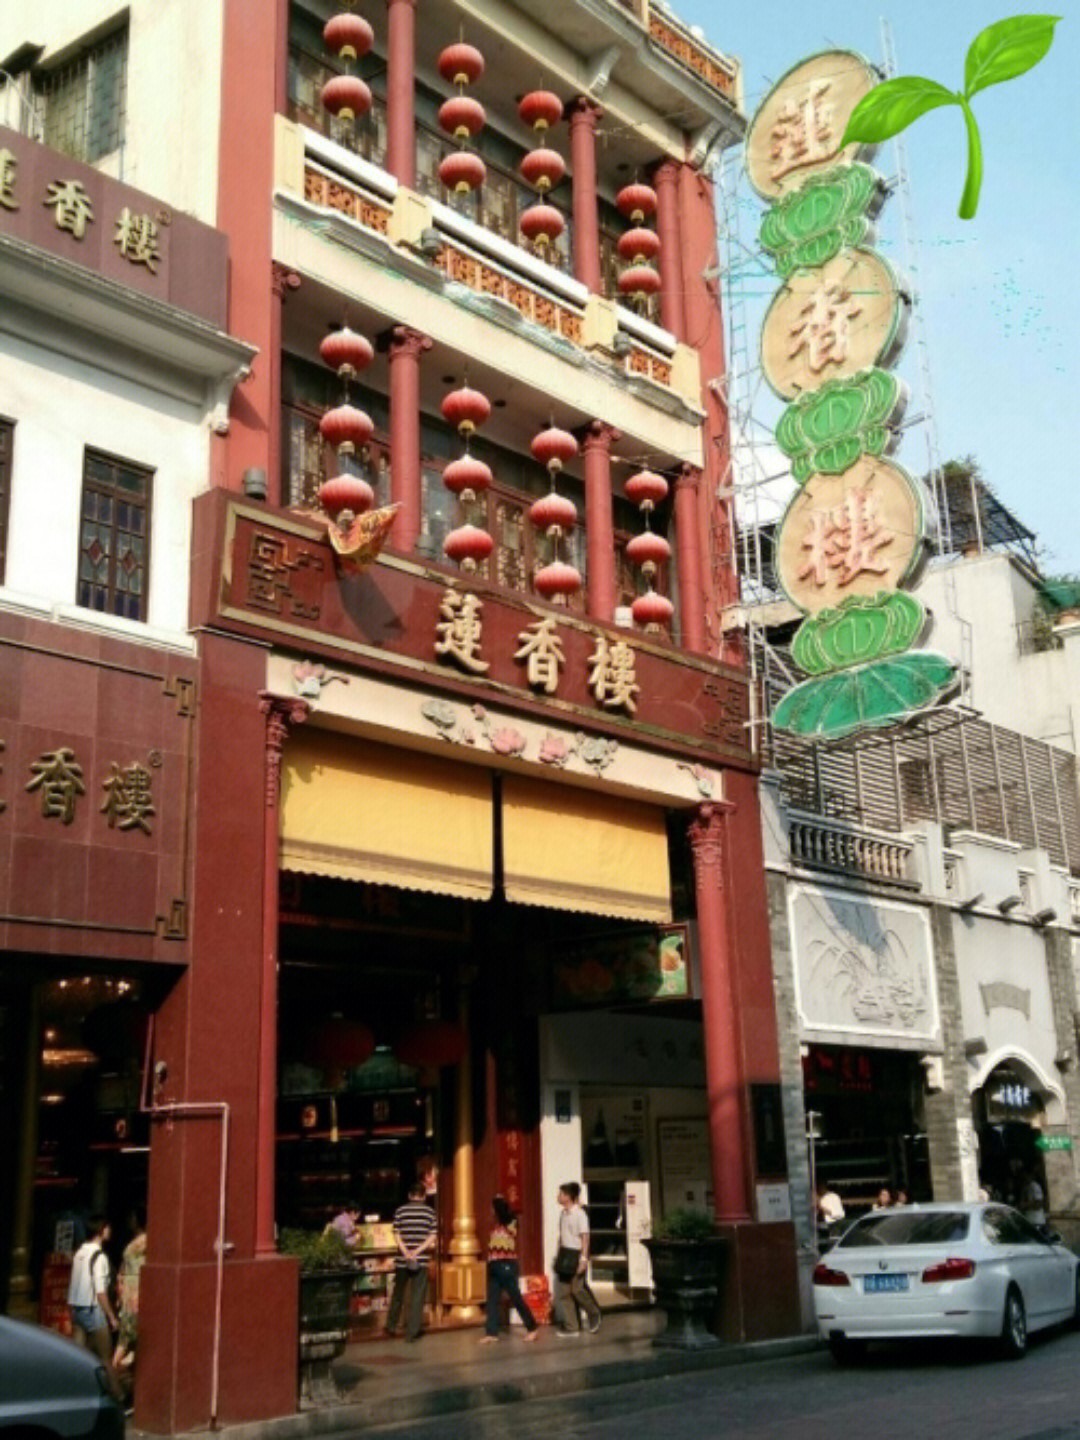 其中有个牌子叫莲香楼,我到广州工作时还专门去他们店去看了一下